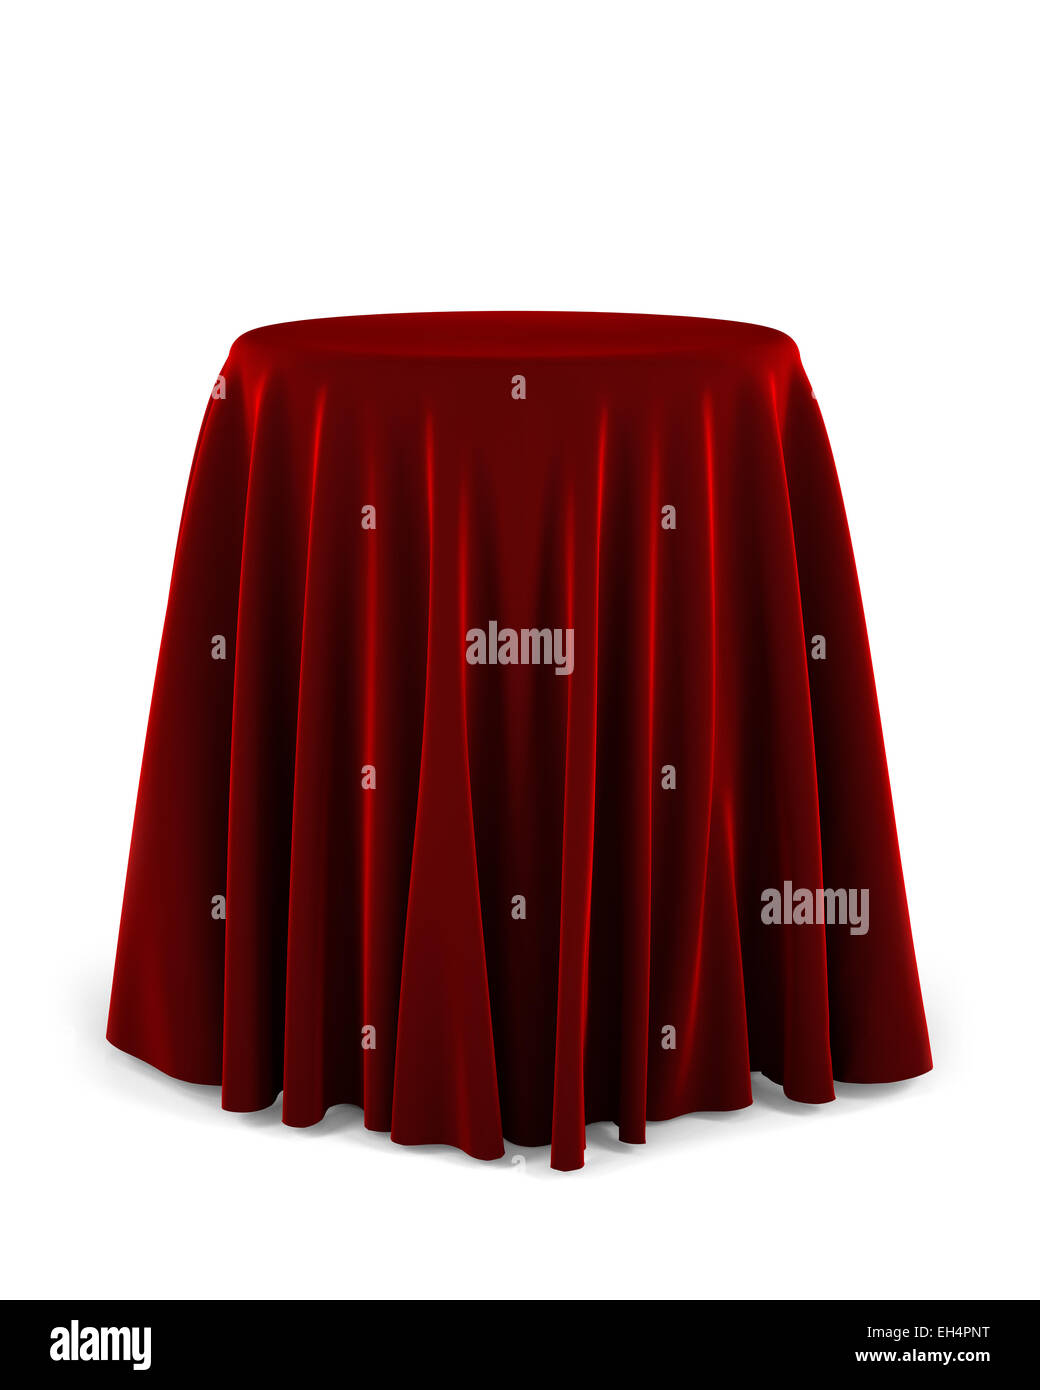 Runde Präsentation Sockel mit einem roten Tuch bedeckt Stockfoto